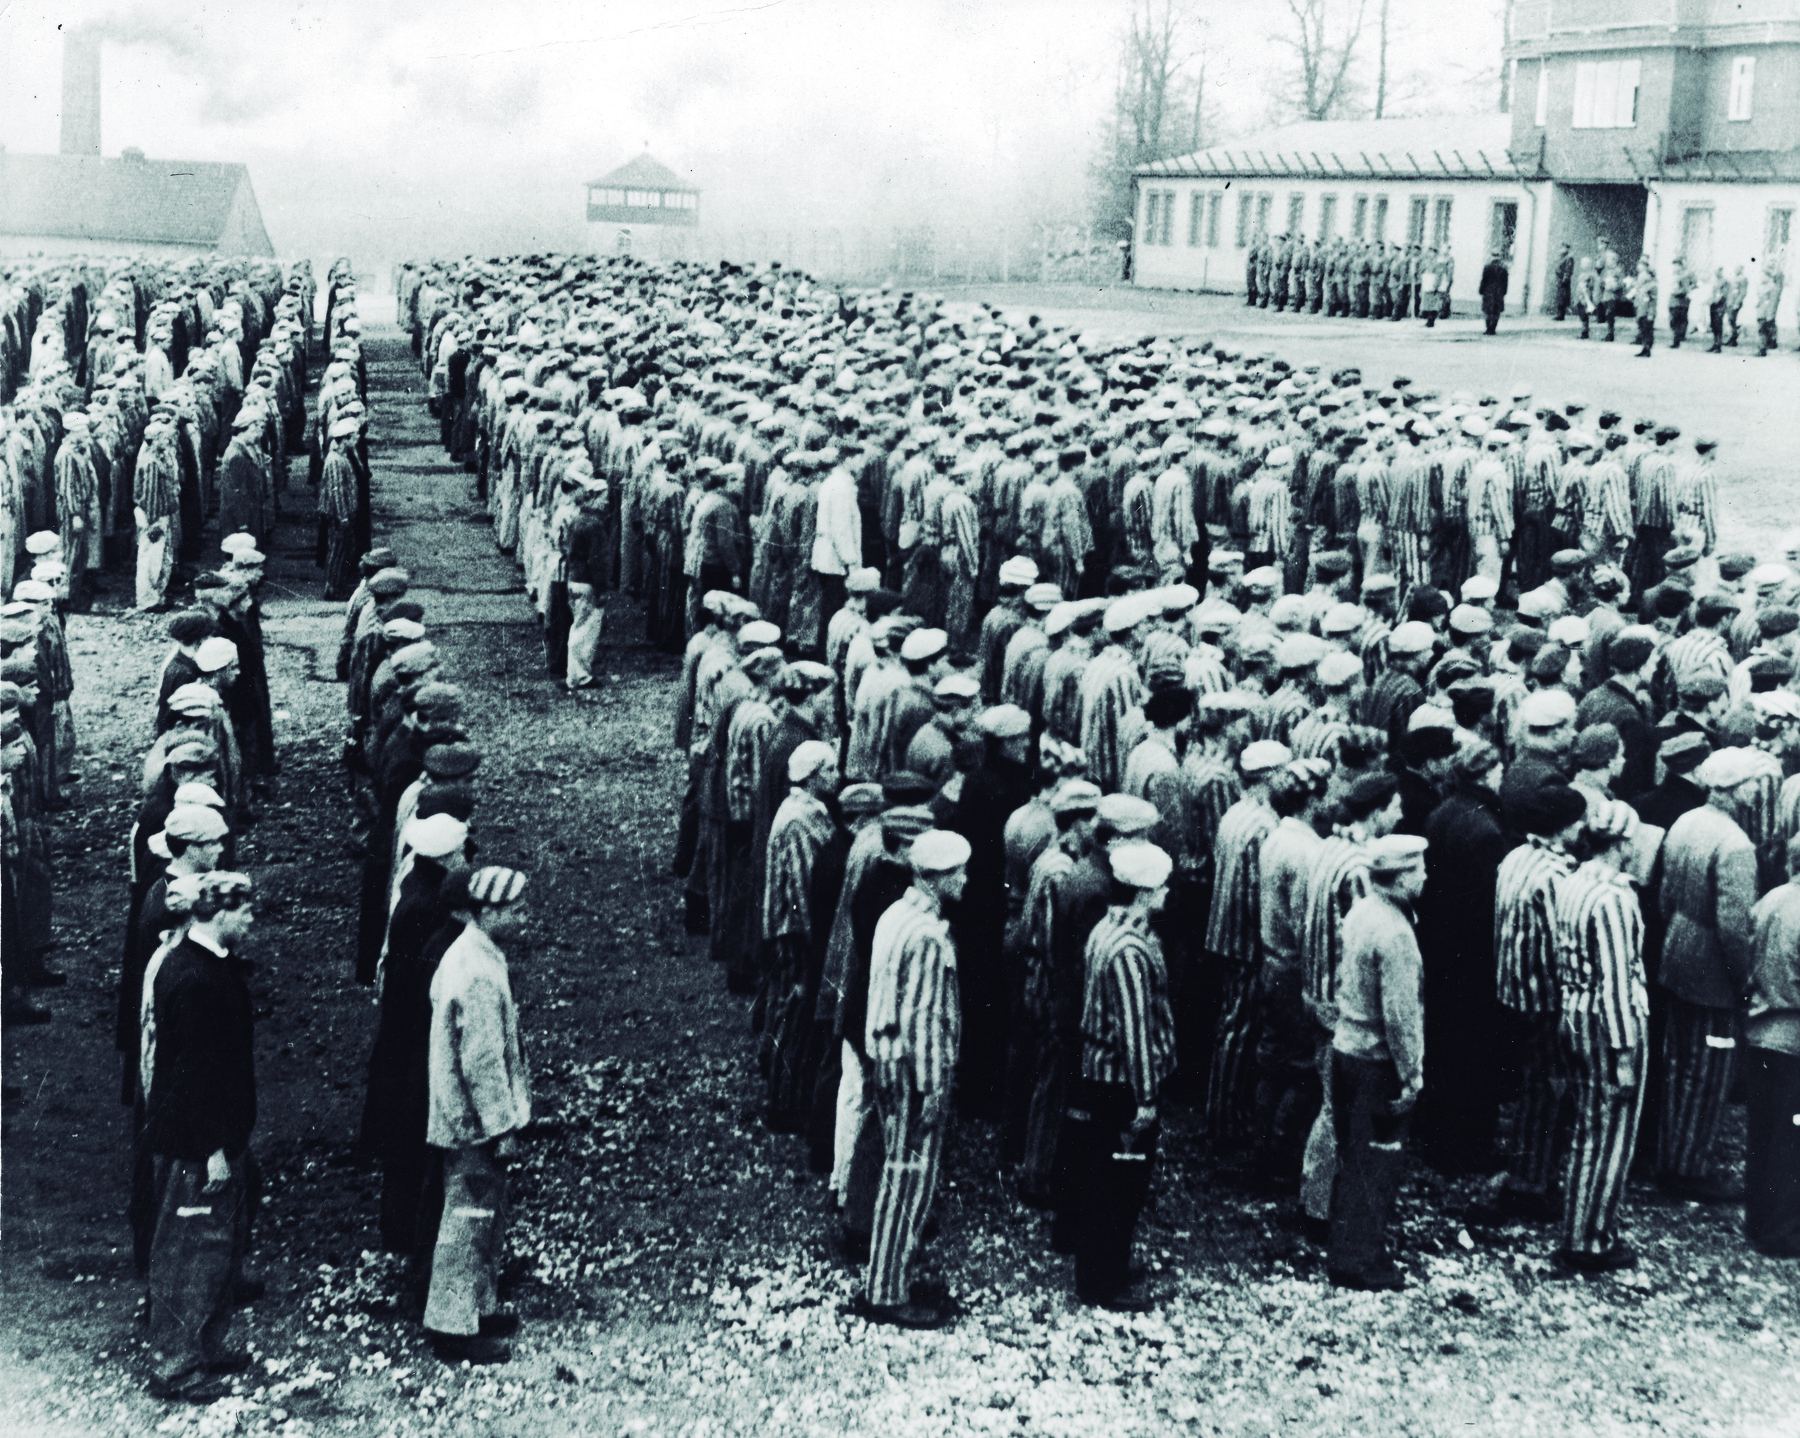 Fotografia em preto e branco. Homens enfileirados em um campo de concentração. Eles usam roupas largas e um gorro na cabeça. A roupa de alguns é listrada. Ao fundo, soldados perfilados e algumas edificações.